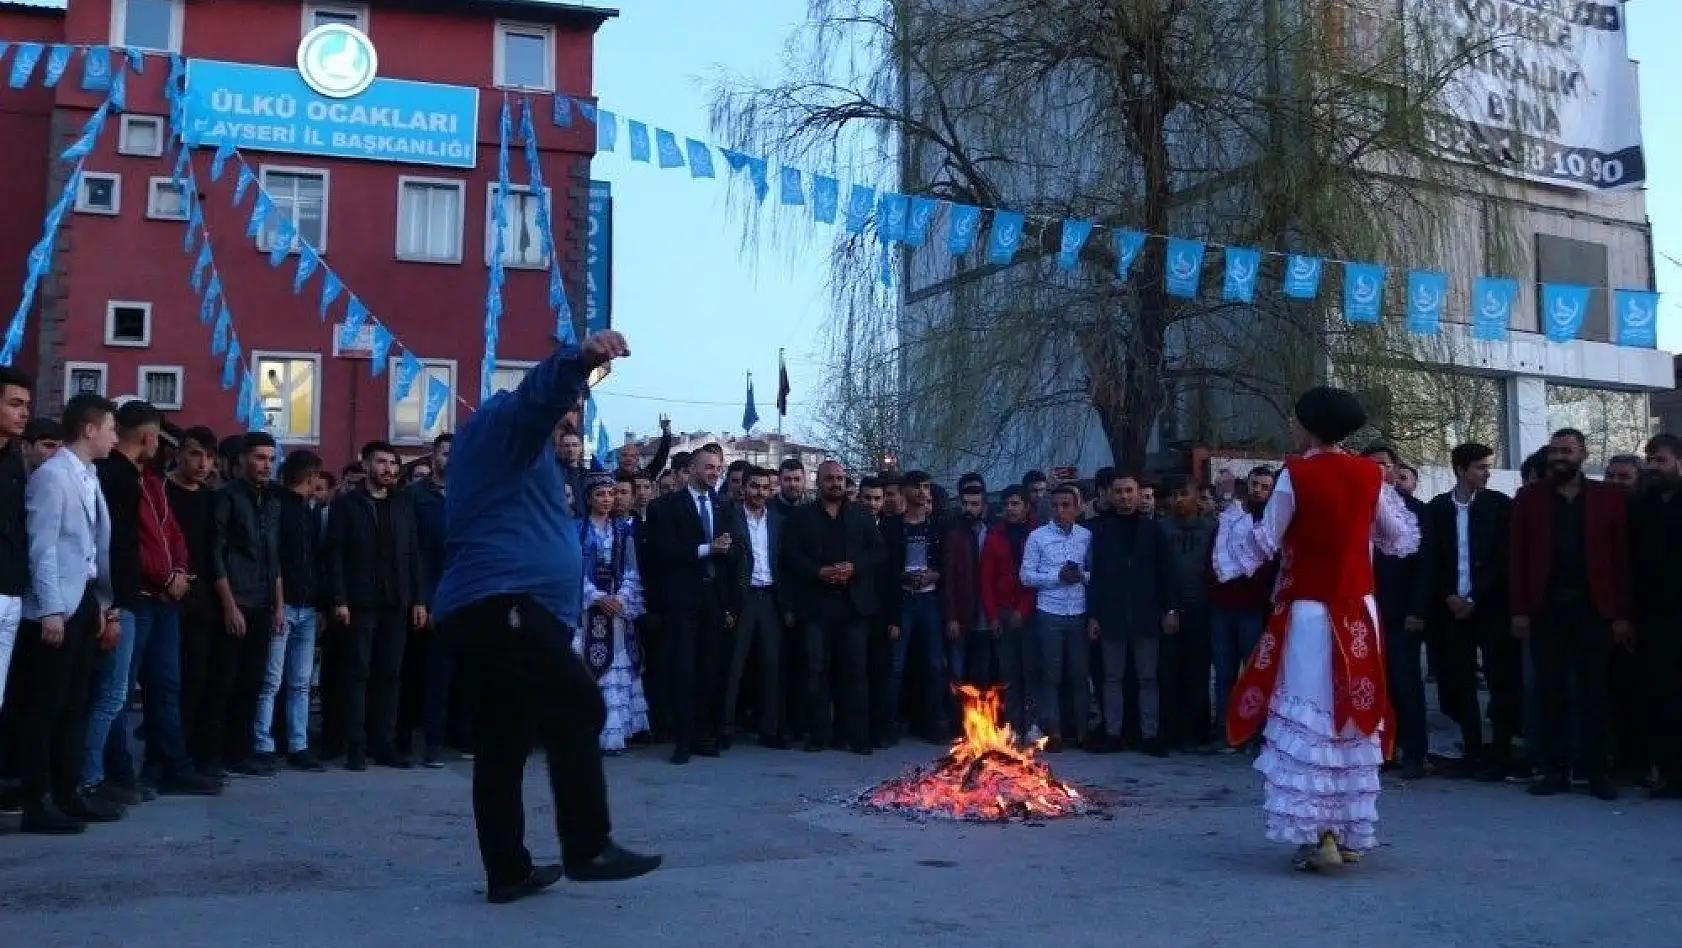 Ülkü Ocakları Nevruz bayramını coşkuyla kutladı